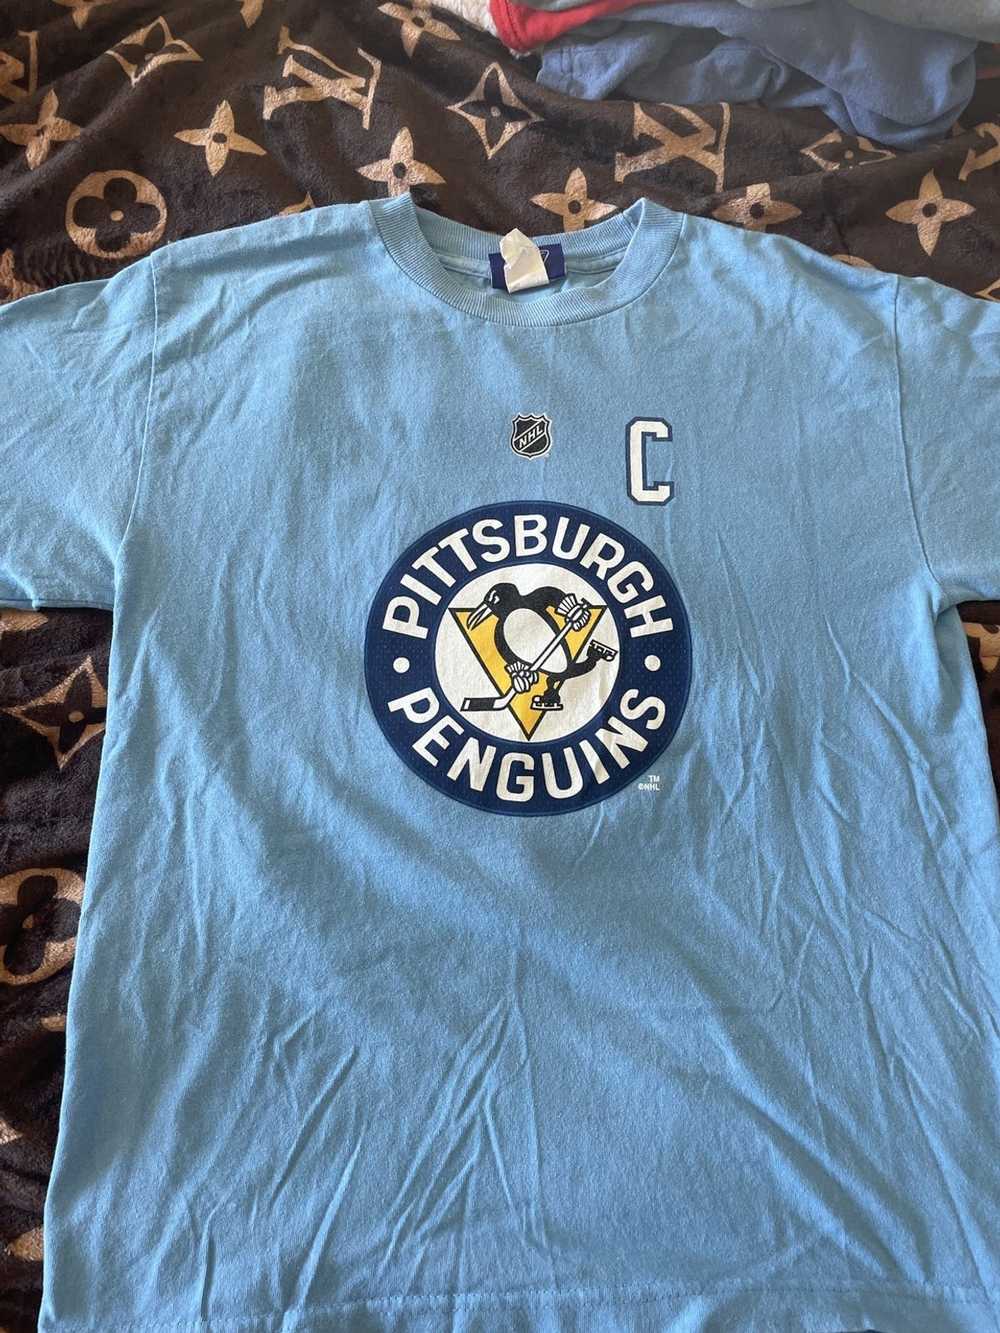 Reebok Crosby Jersey shirt - image 1